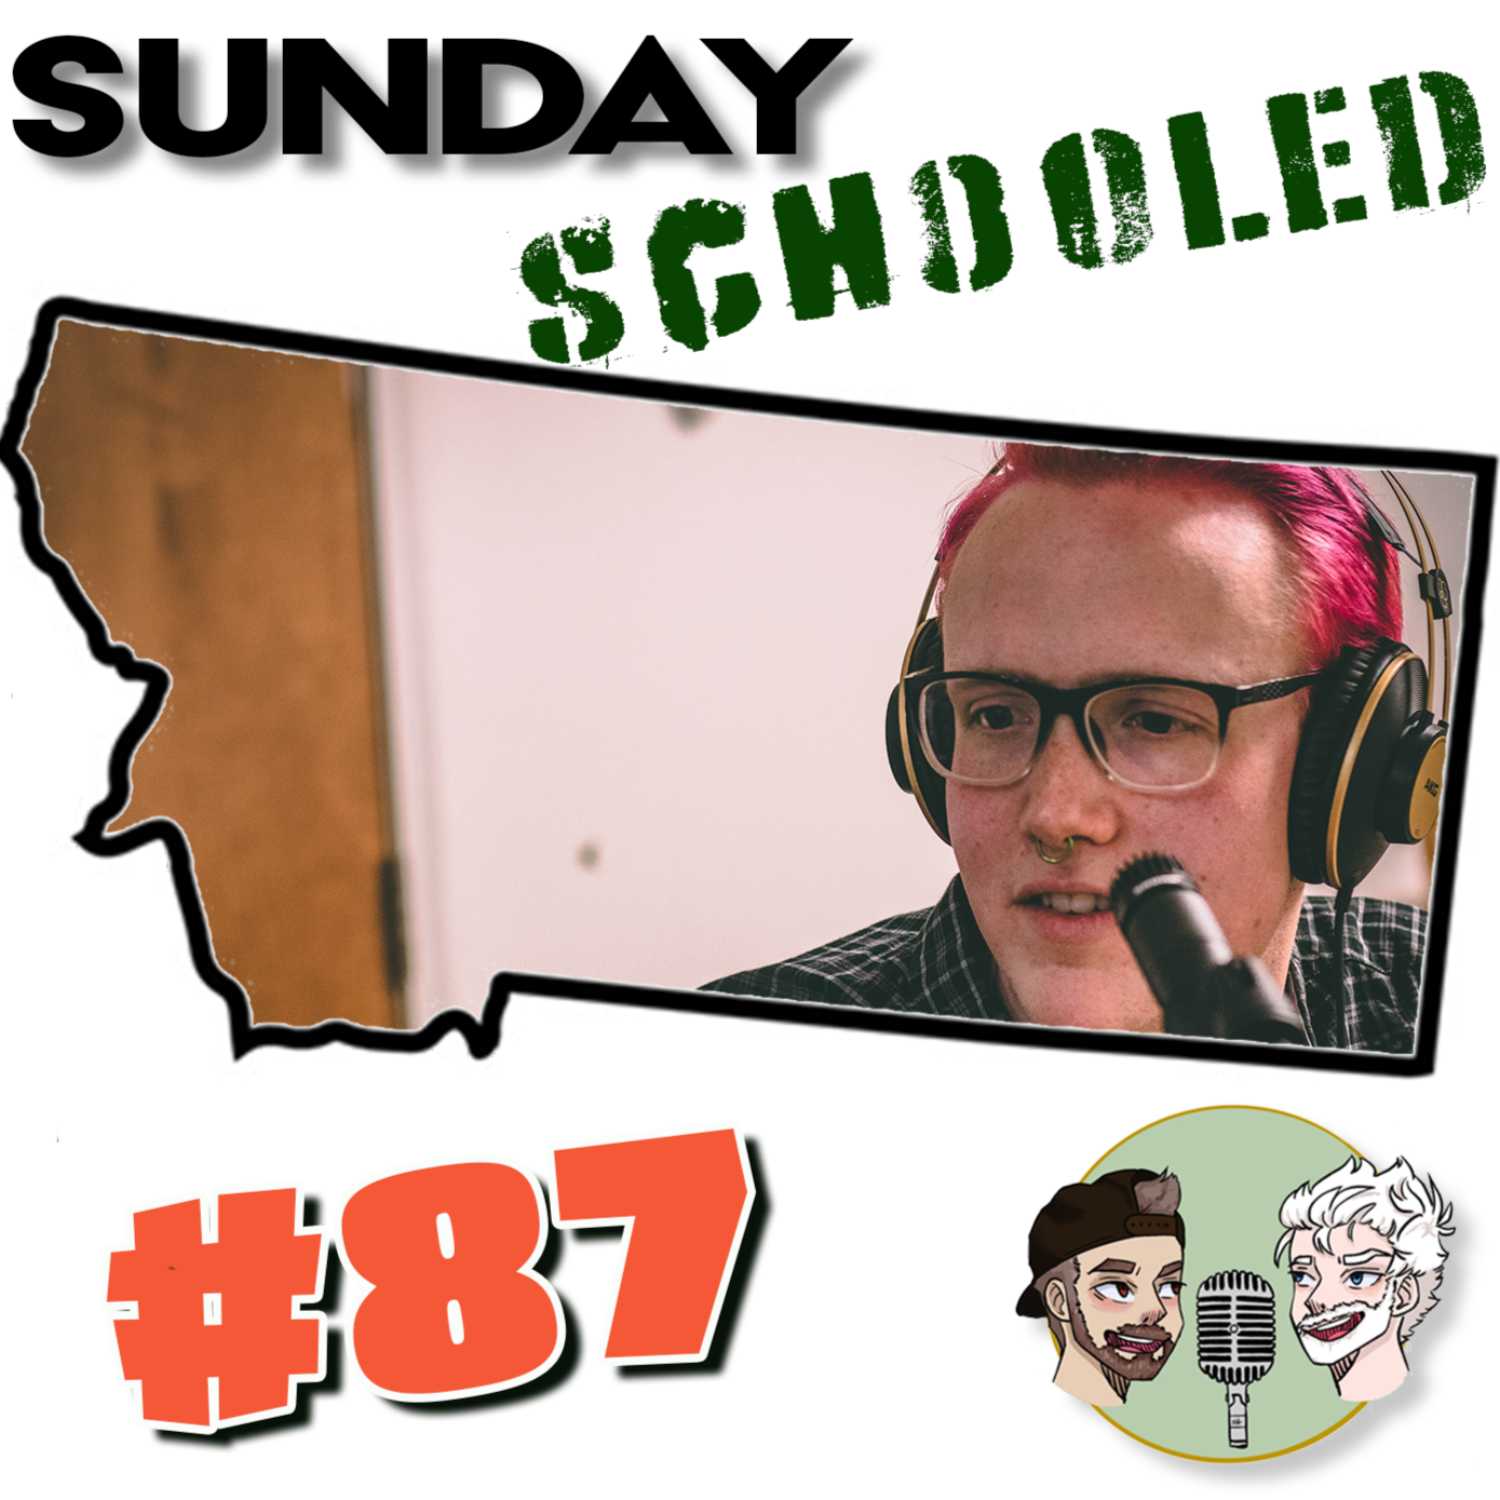 87: Sunday Schooled